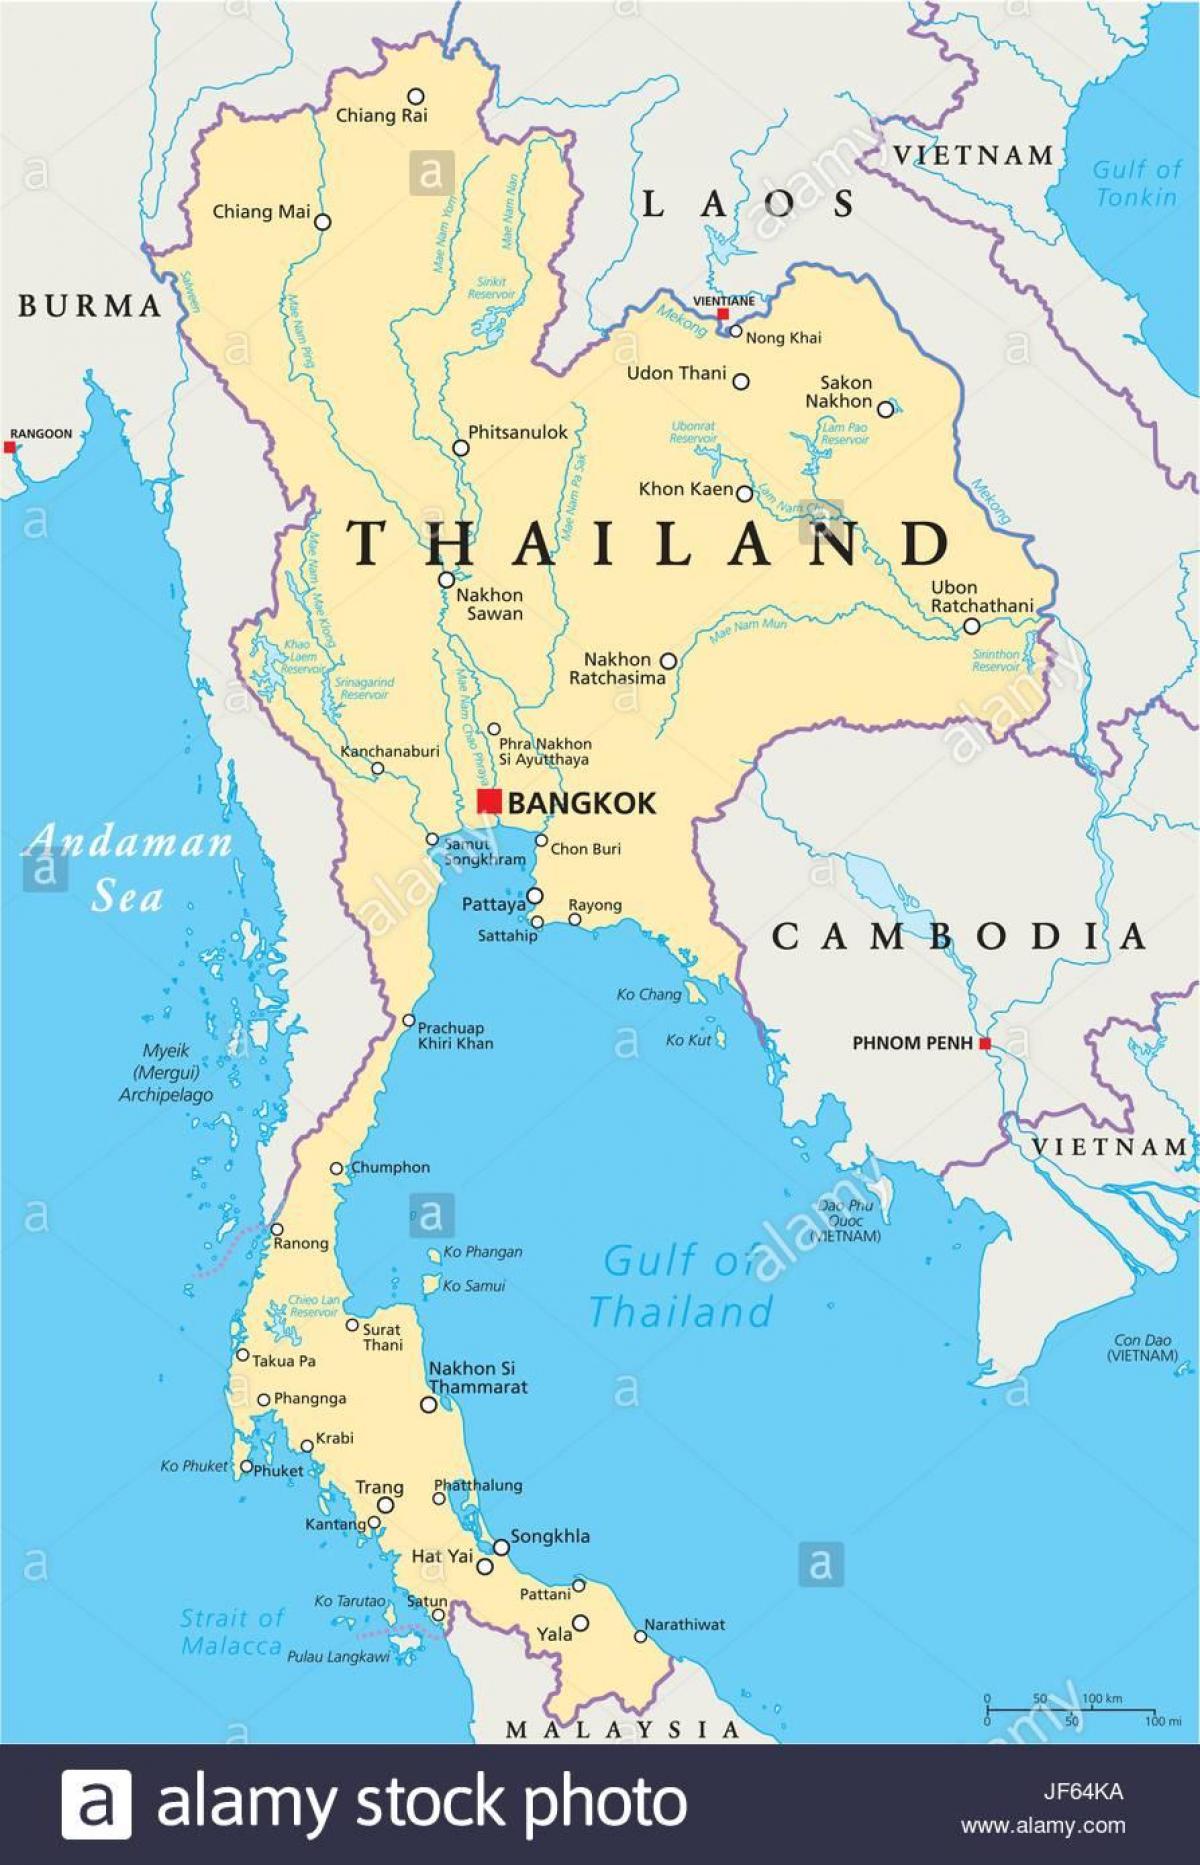 Банкок, Тайланд карта на света